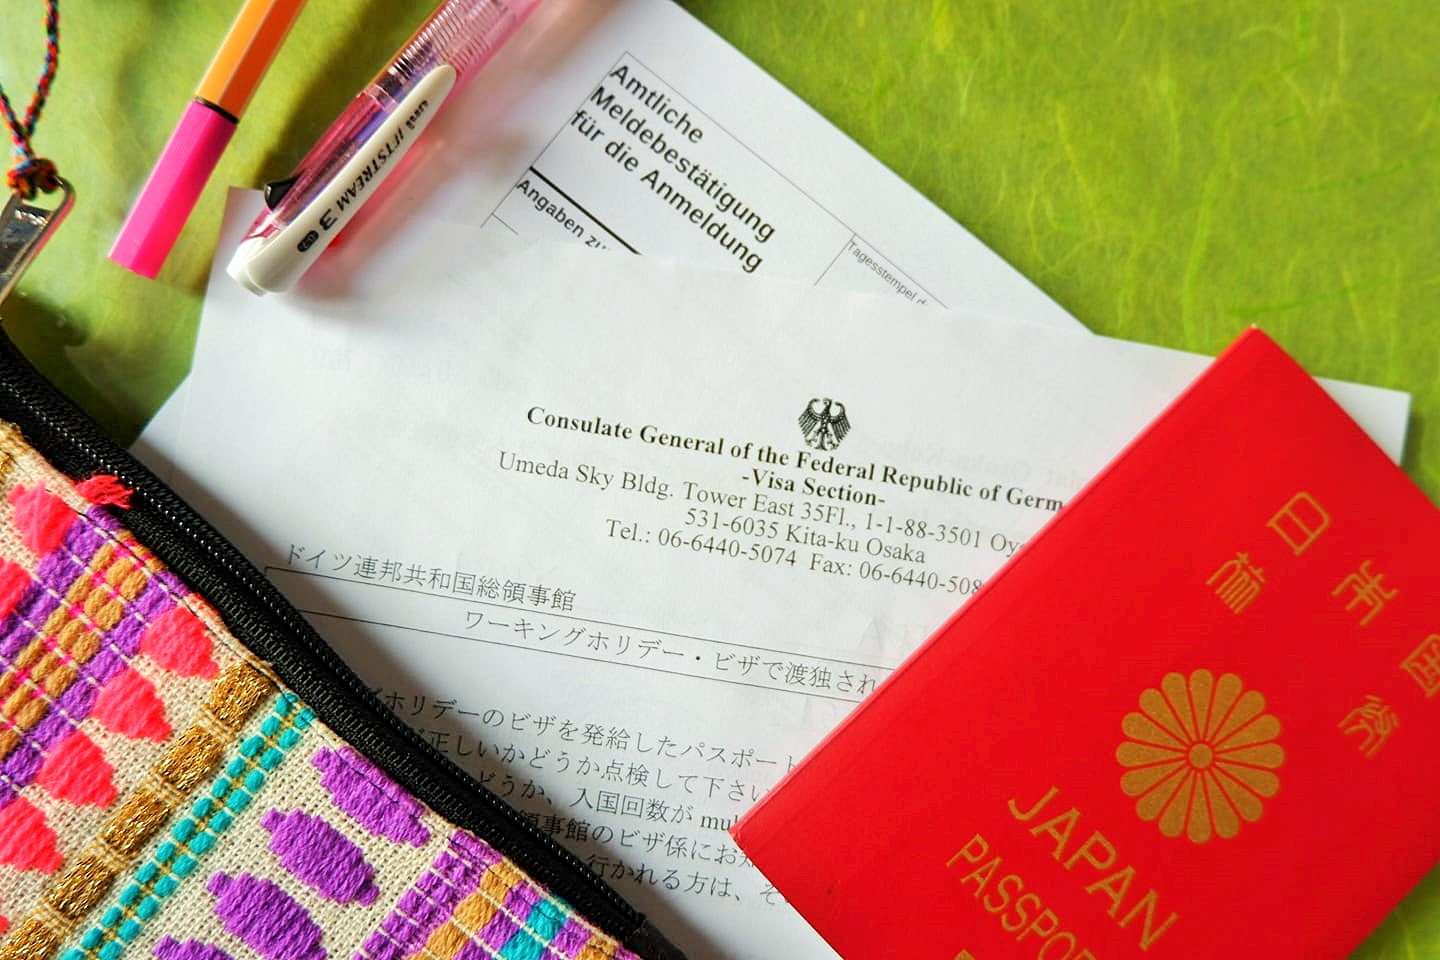 パスポートと住民登録書類